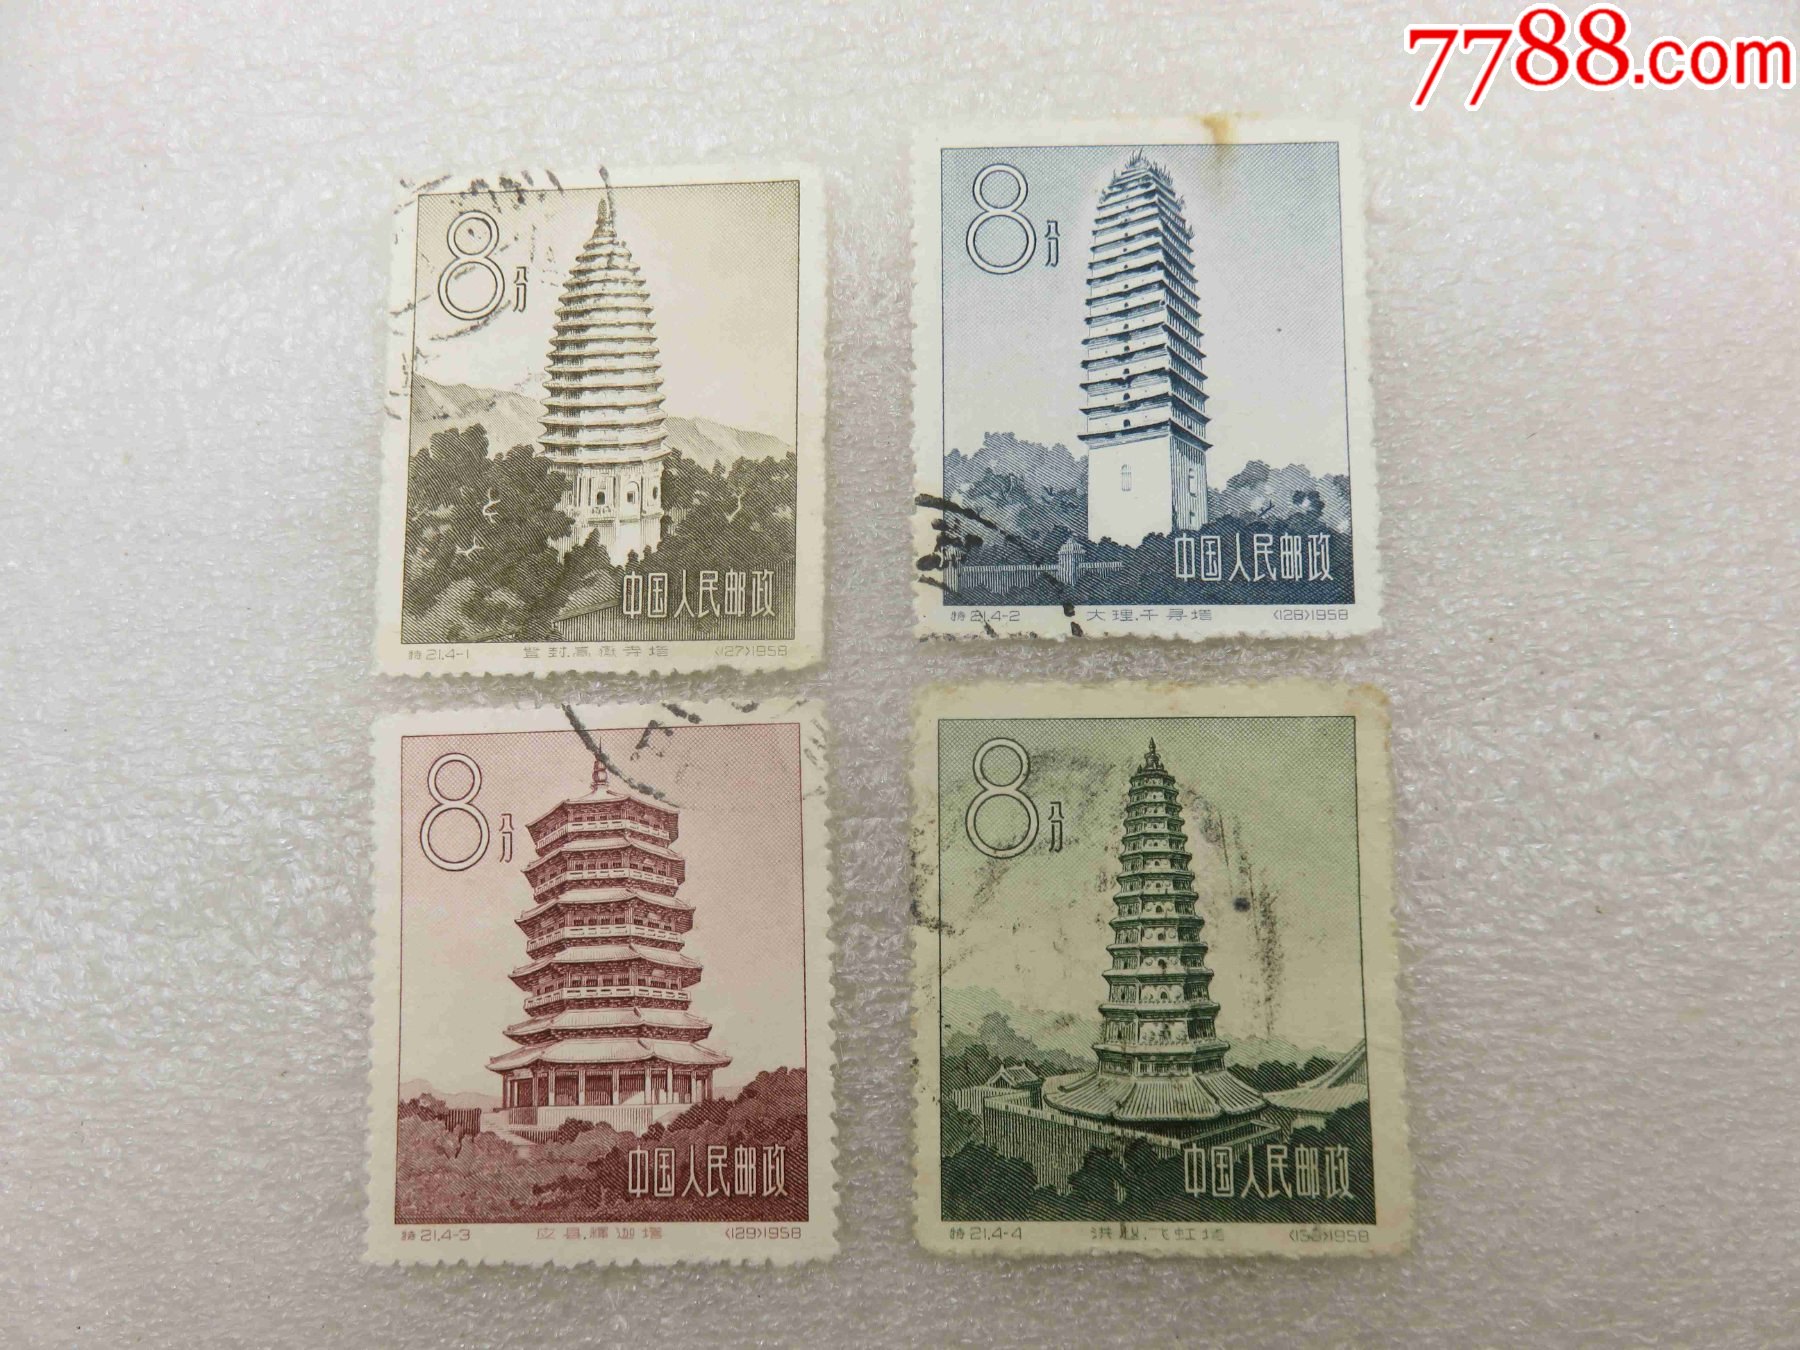 1545特21中国古塔建筑艺术4枚信销全套邮票